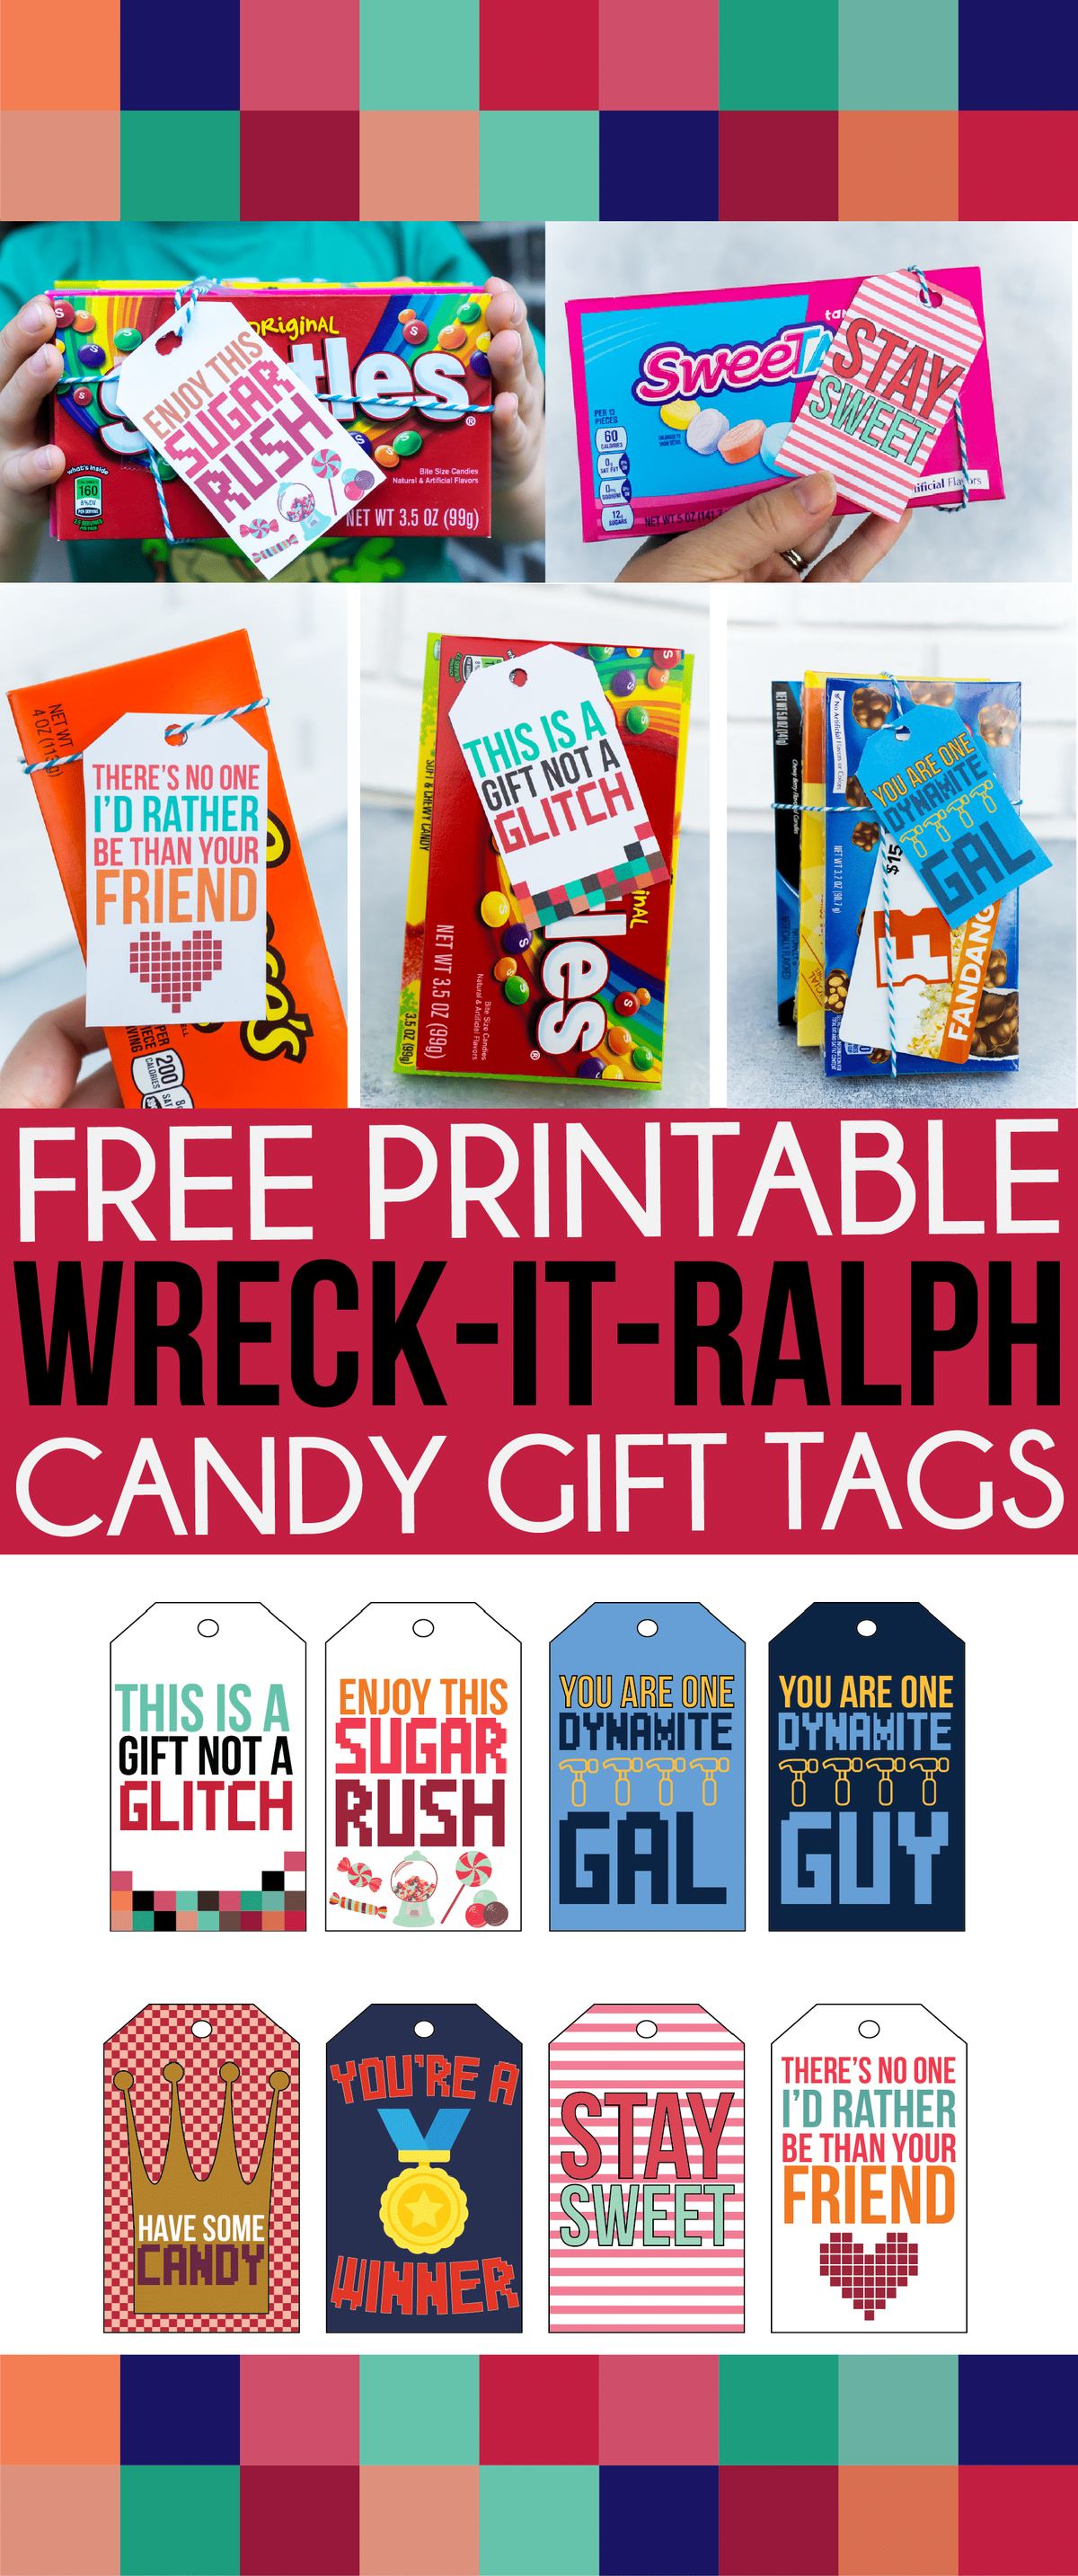 Δωρεάν εκτυπώσιμες ετικέτες δώρων Wreck It Ralph! Ιδανικό για ένα γλυκό δώρο για έναν φίλο, έναν δάσκαλο ή οποιονδήποτε αγαπά τη Disney!